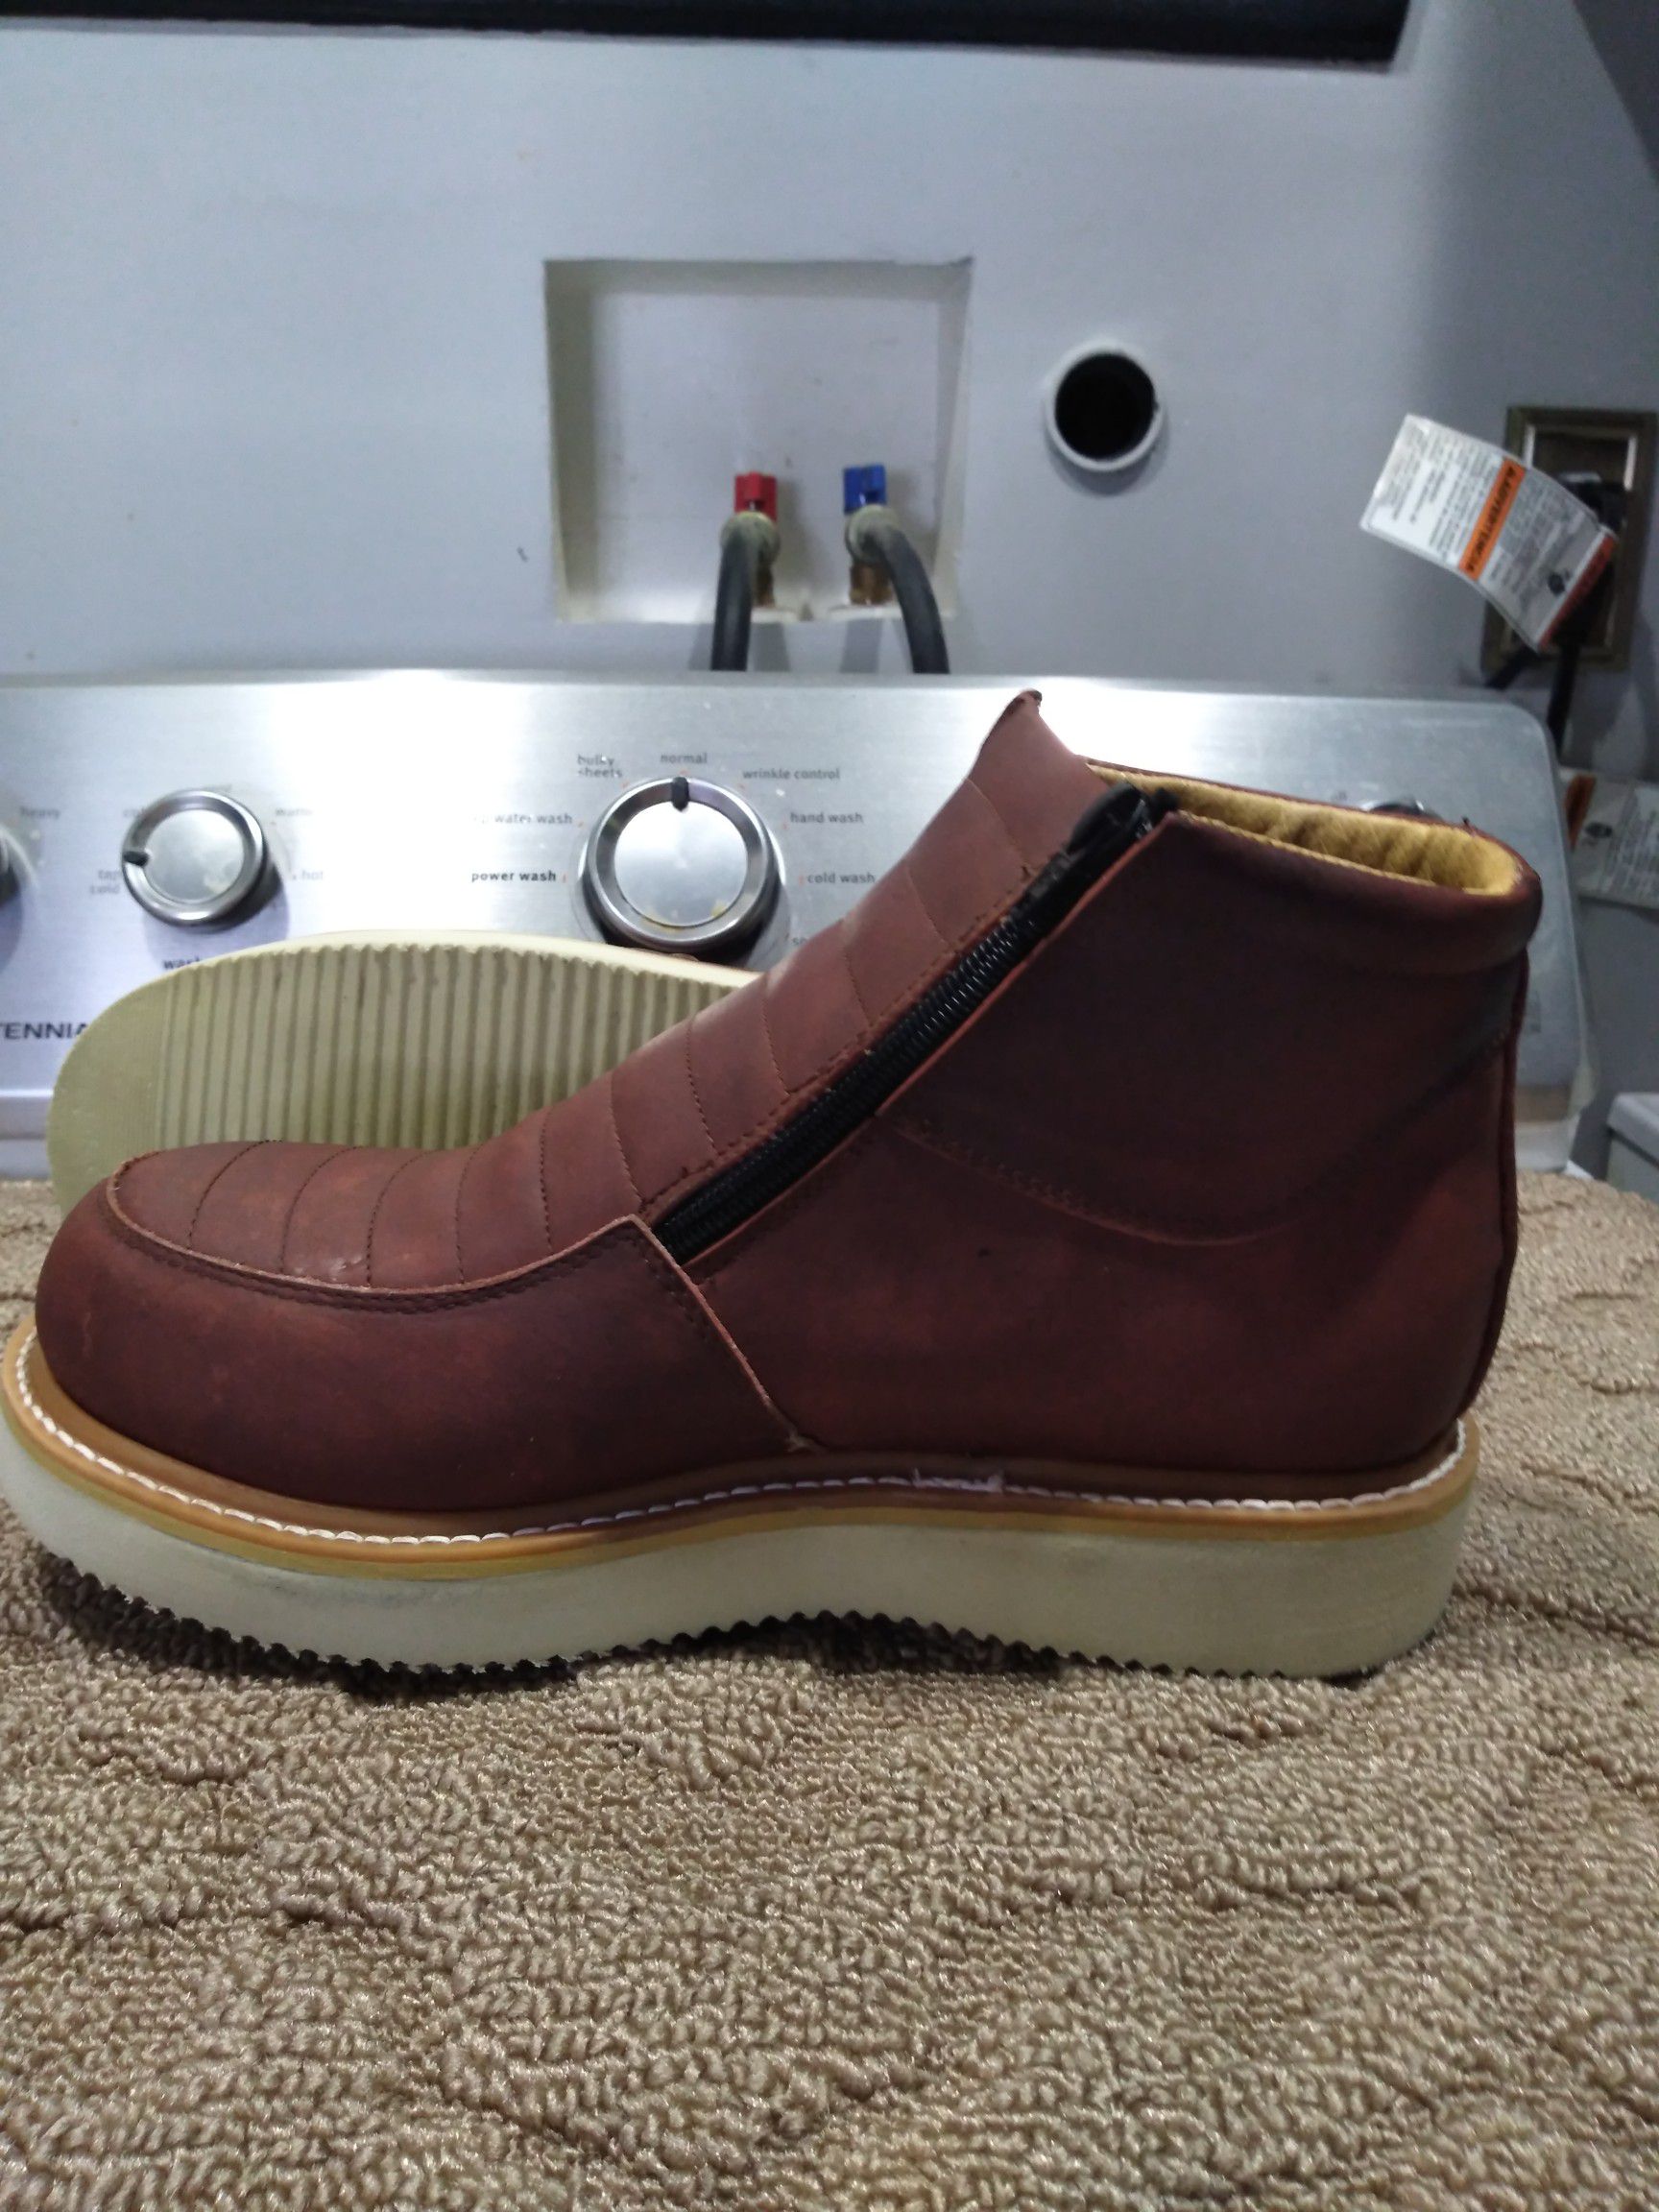 Mexican Leather Work Boots-Bota de Mexico de Piel